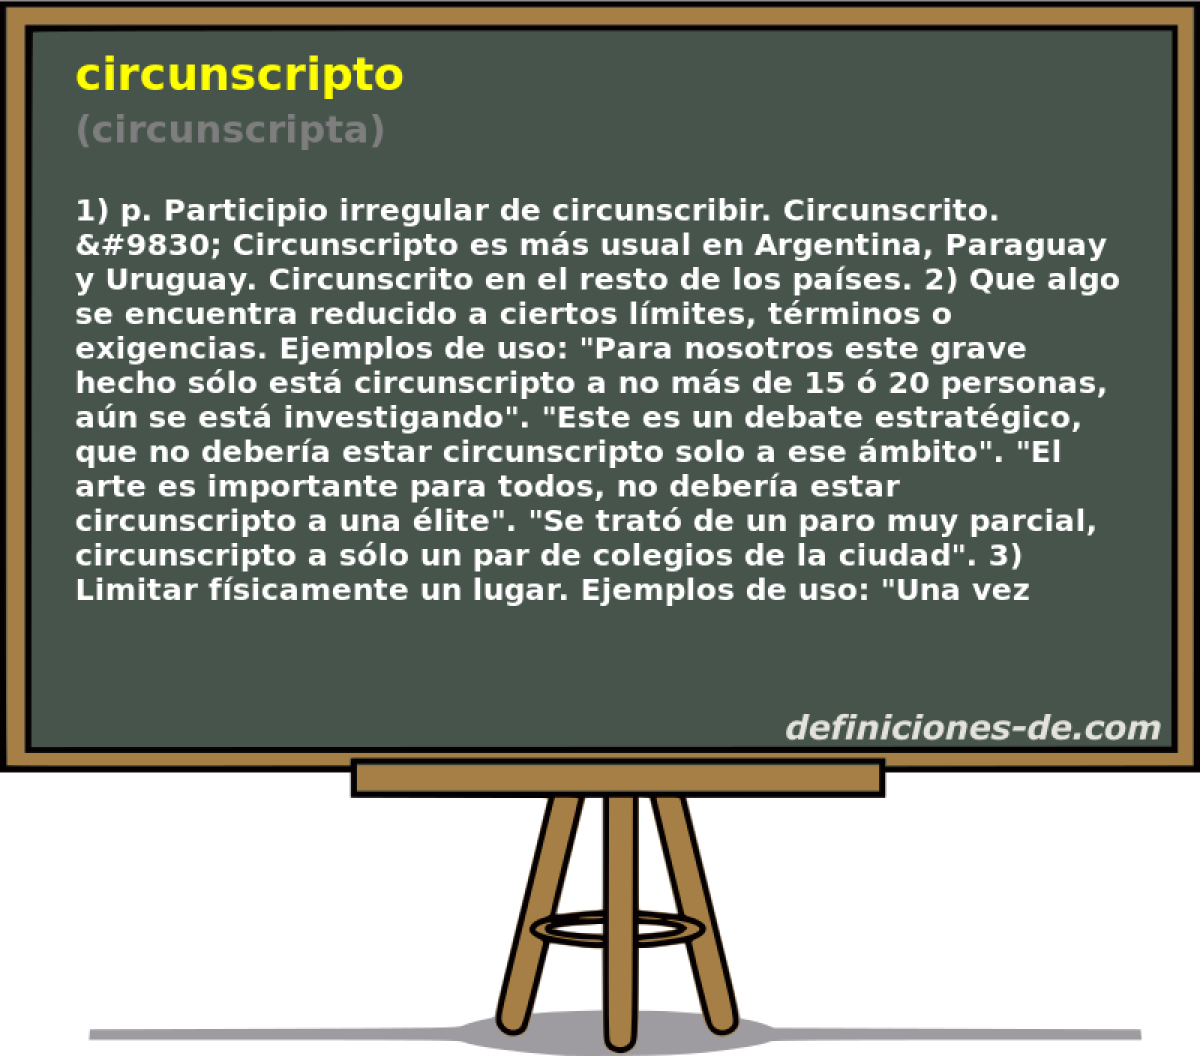 circunscripto (circunscripta)